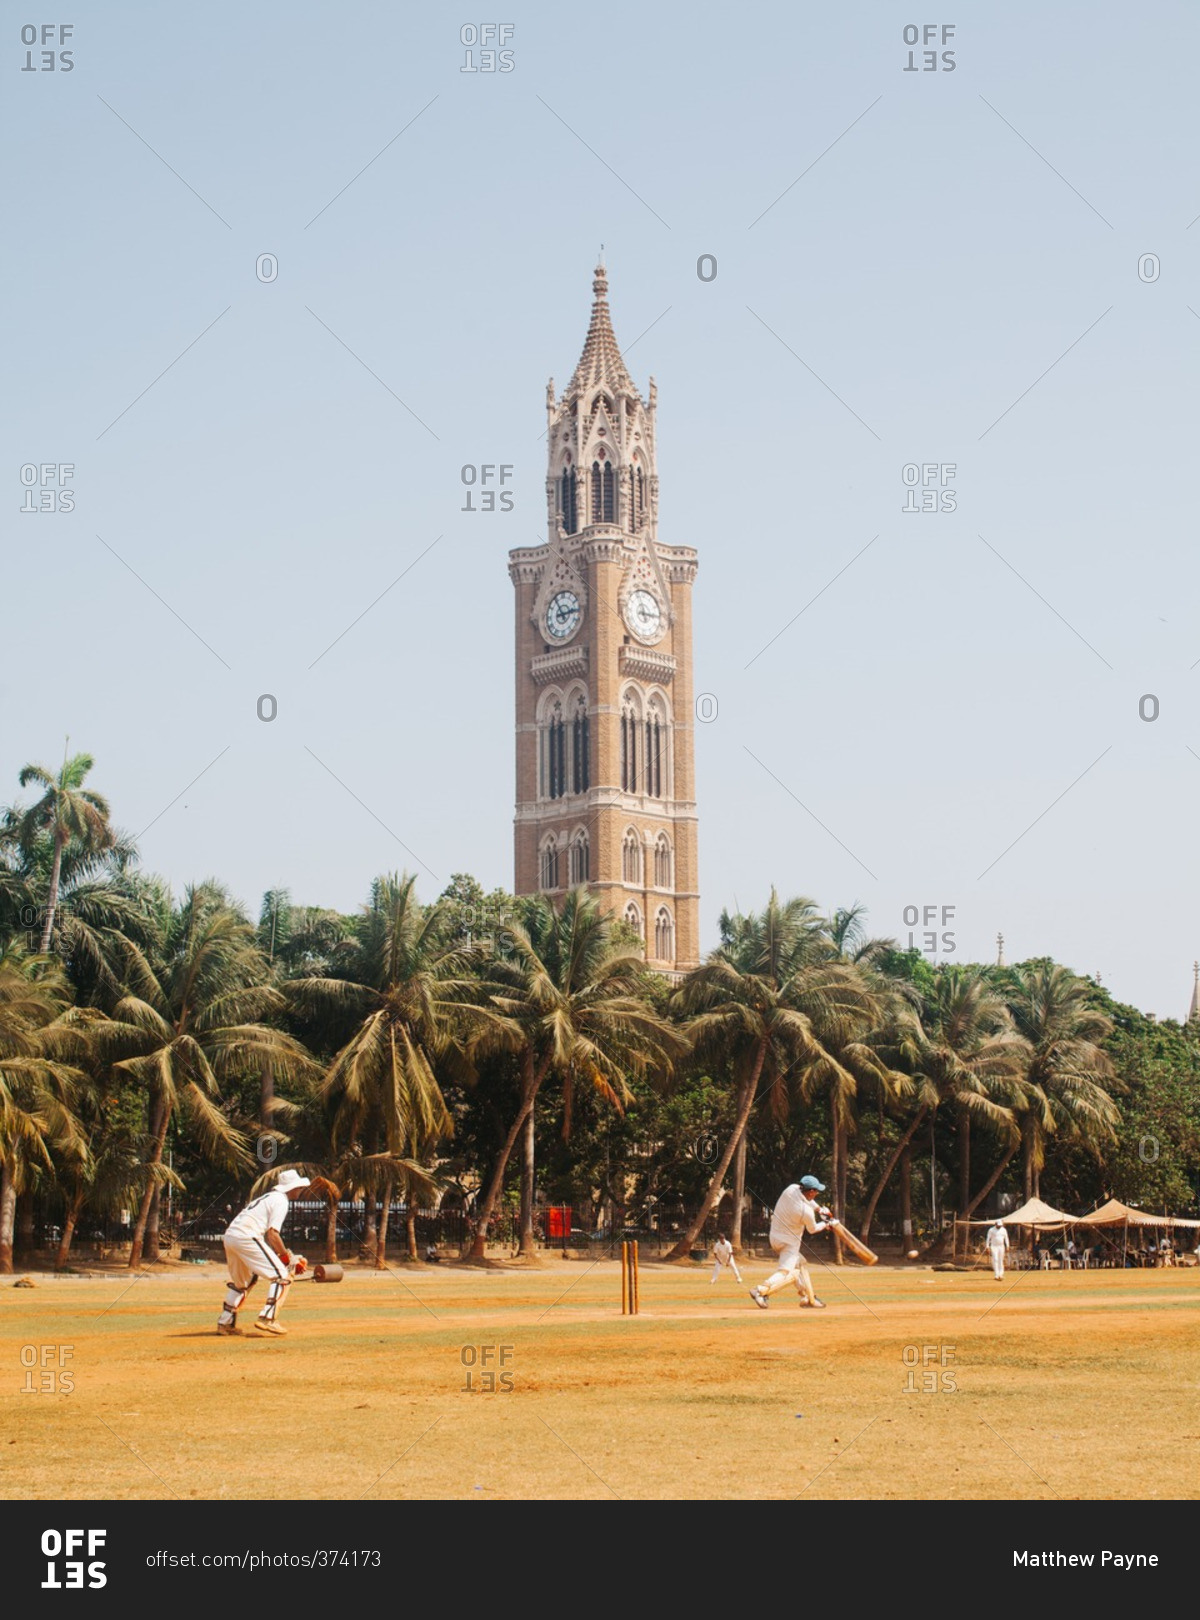 Cricket match near a clock tower